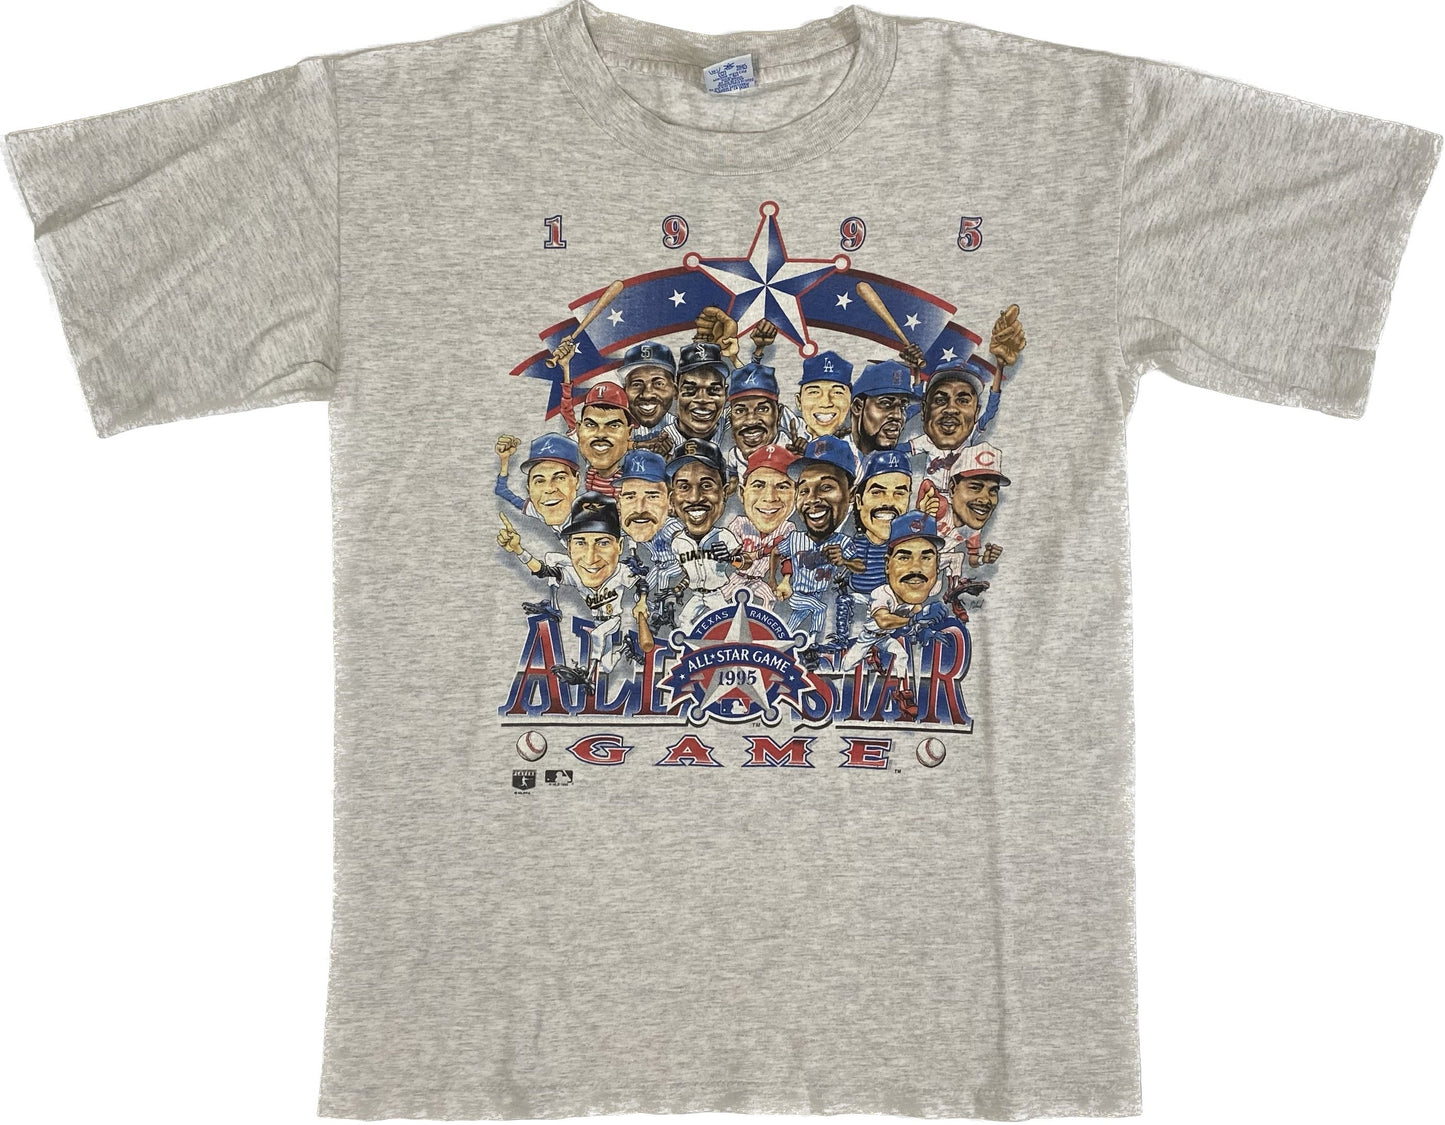 1995 Texas Rangers All-Star Game T-shirt Sz M (L676)